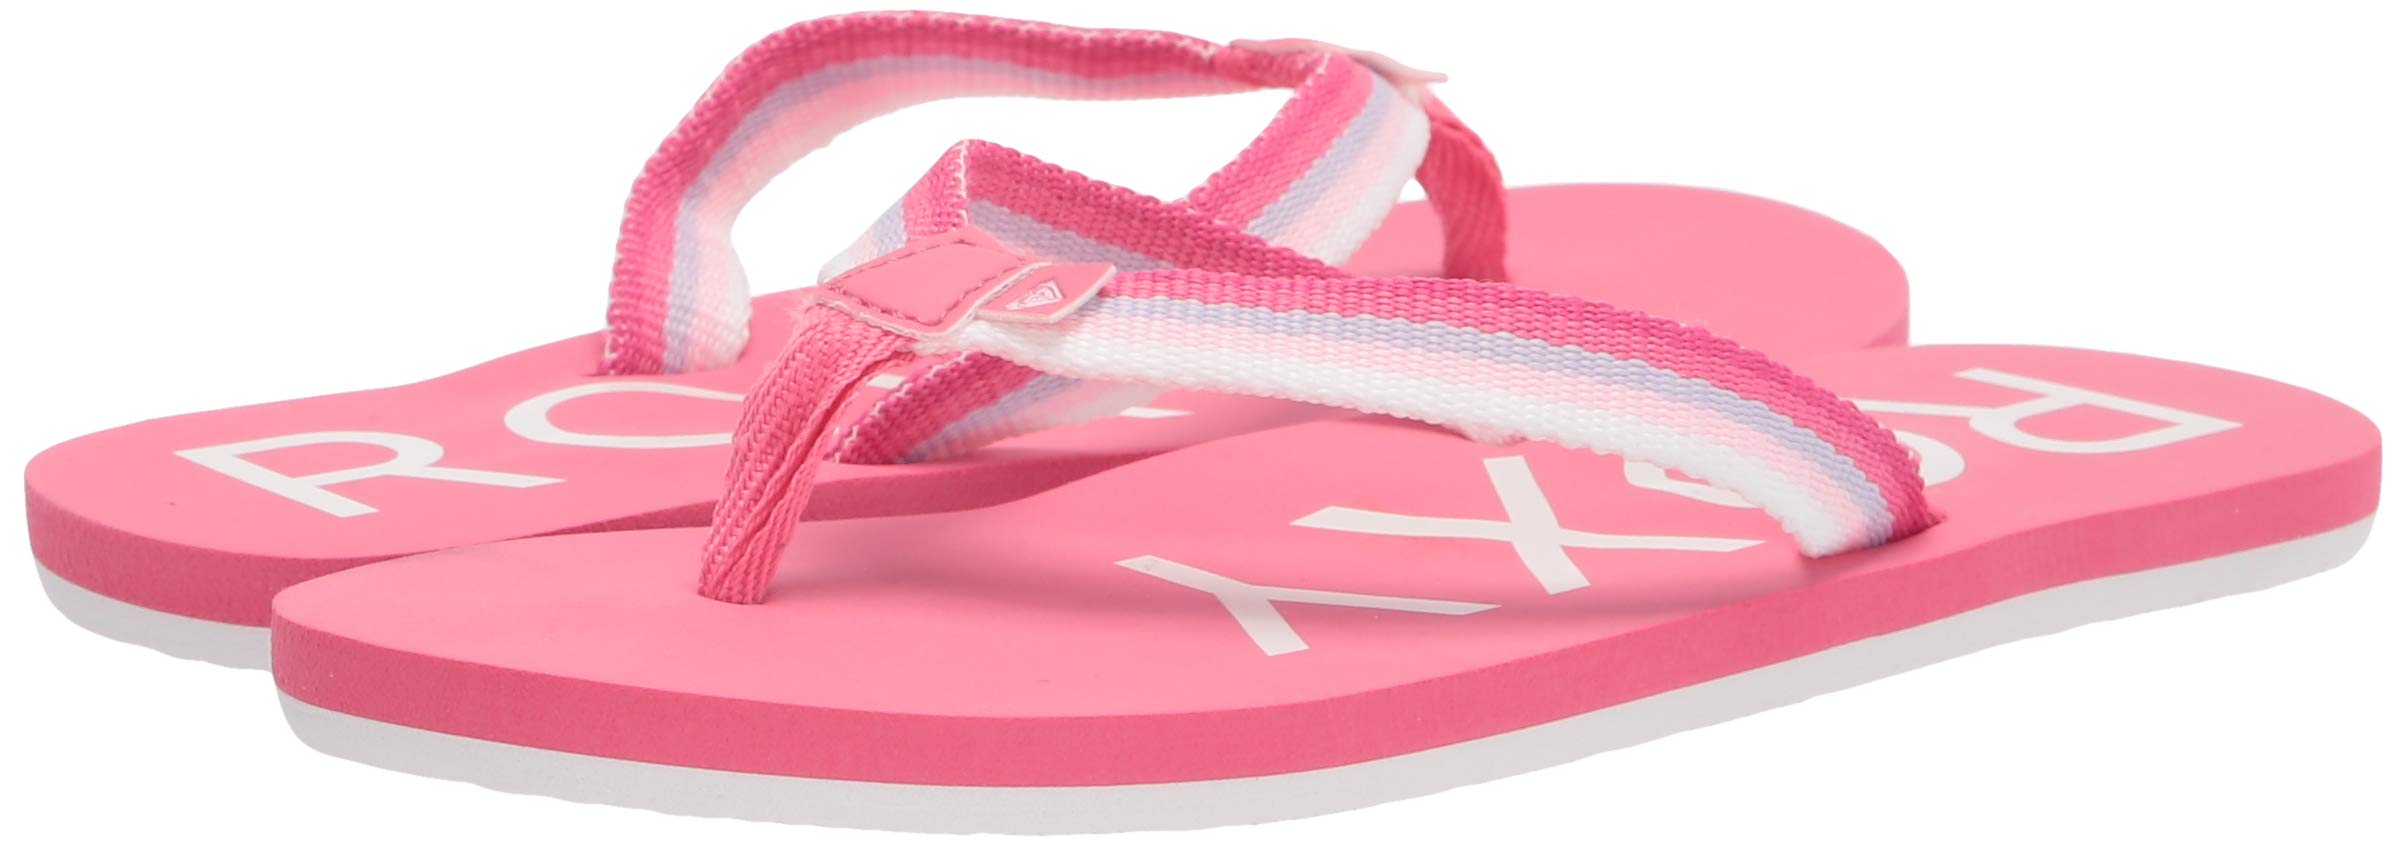 Roxy Girls Rg Colbee Flip Flop Sandal, Pink 211, 2 Little Kid